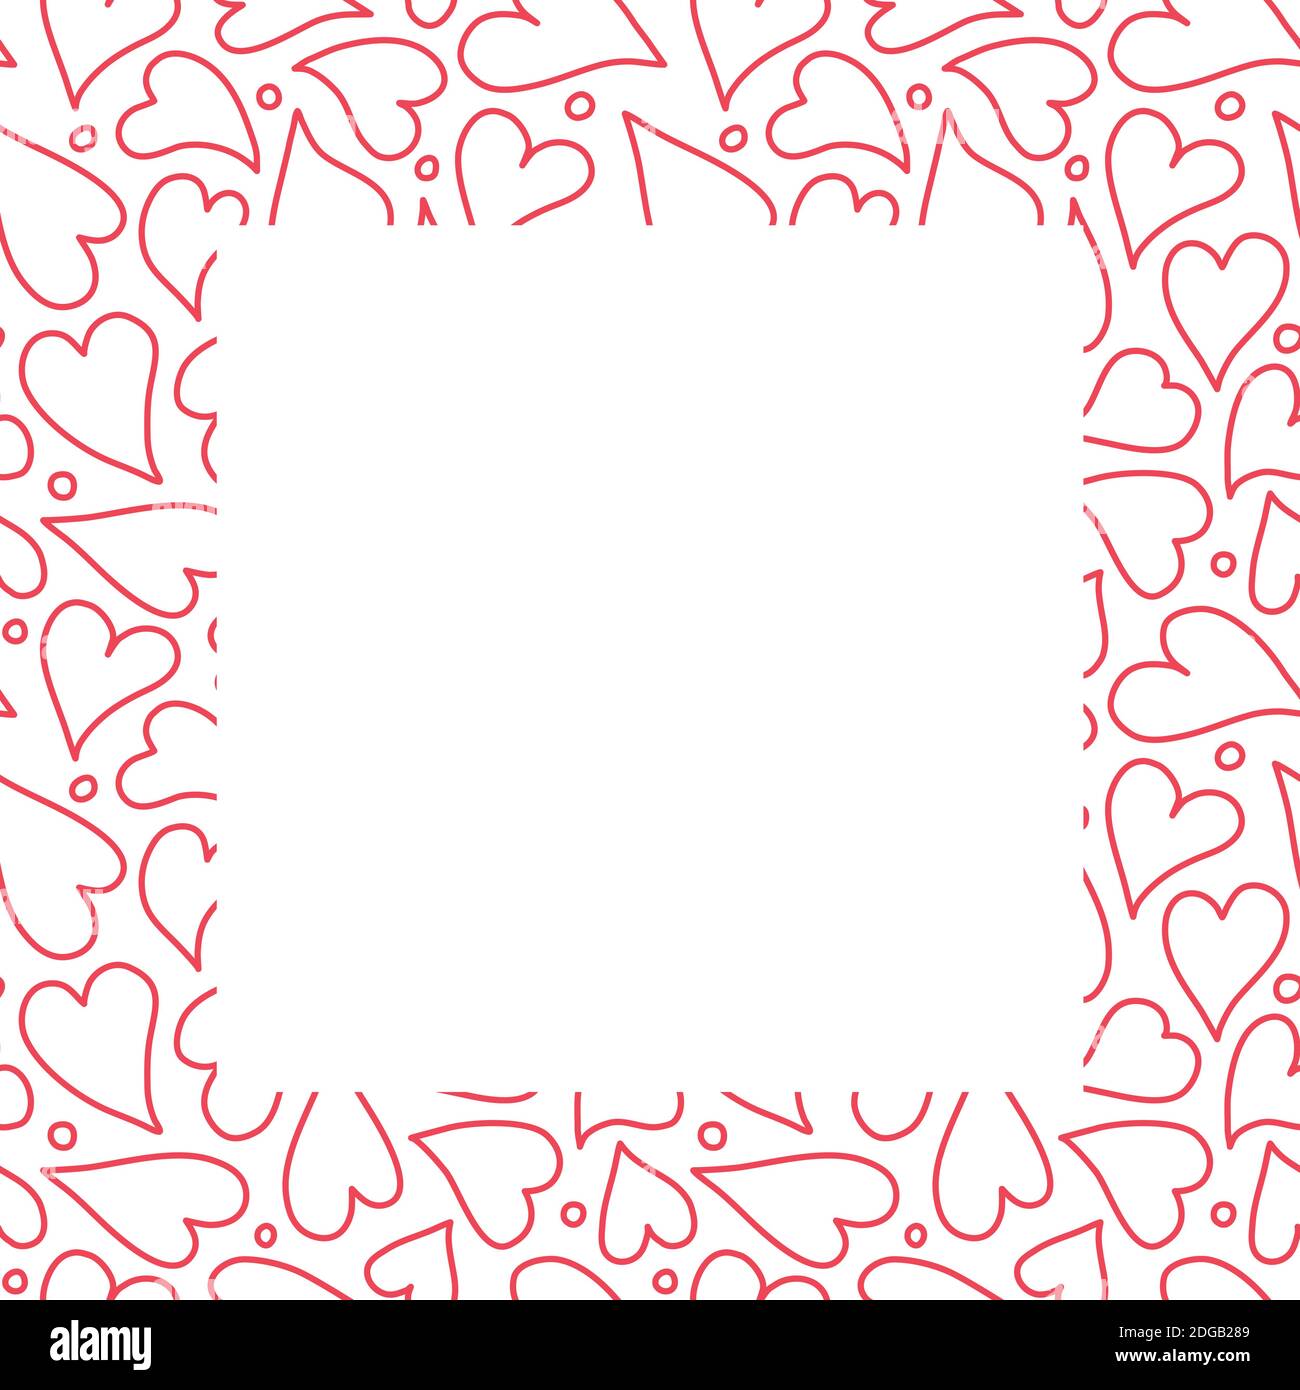 Herz Rahmen Rahmen Design Hintergrund, Hand gezeichnet rot umrandeten Herzen  in einem quadratischen umgeben. Vektorvorlage Stock-Vektorgrafik - Alamy